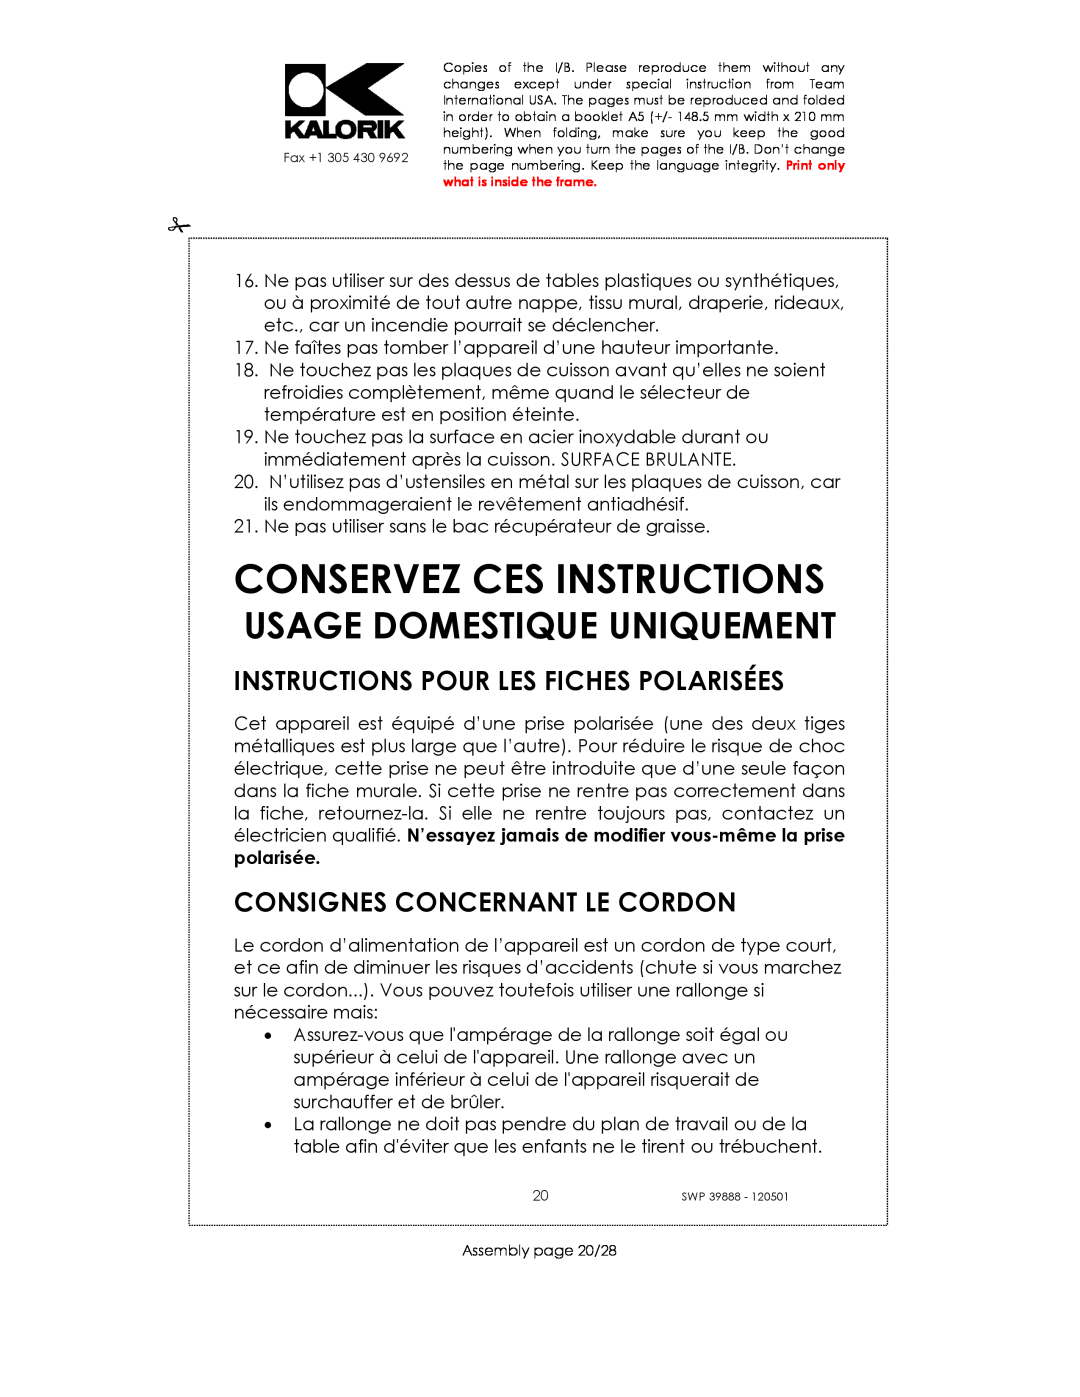 Kalorik SWP 39888 Conservez Ces Instructions, Instructions Pour Les Fiches Polarisées, Consignes Concernant Le Cordon 